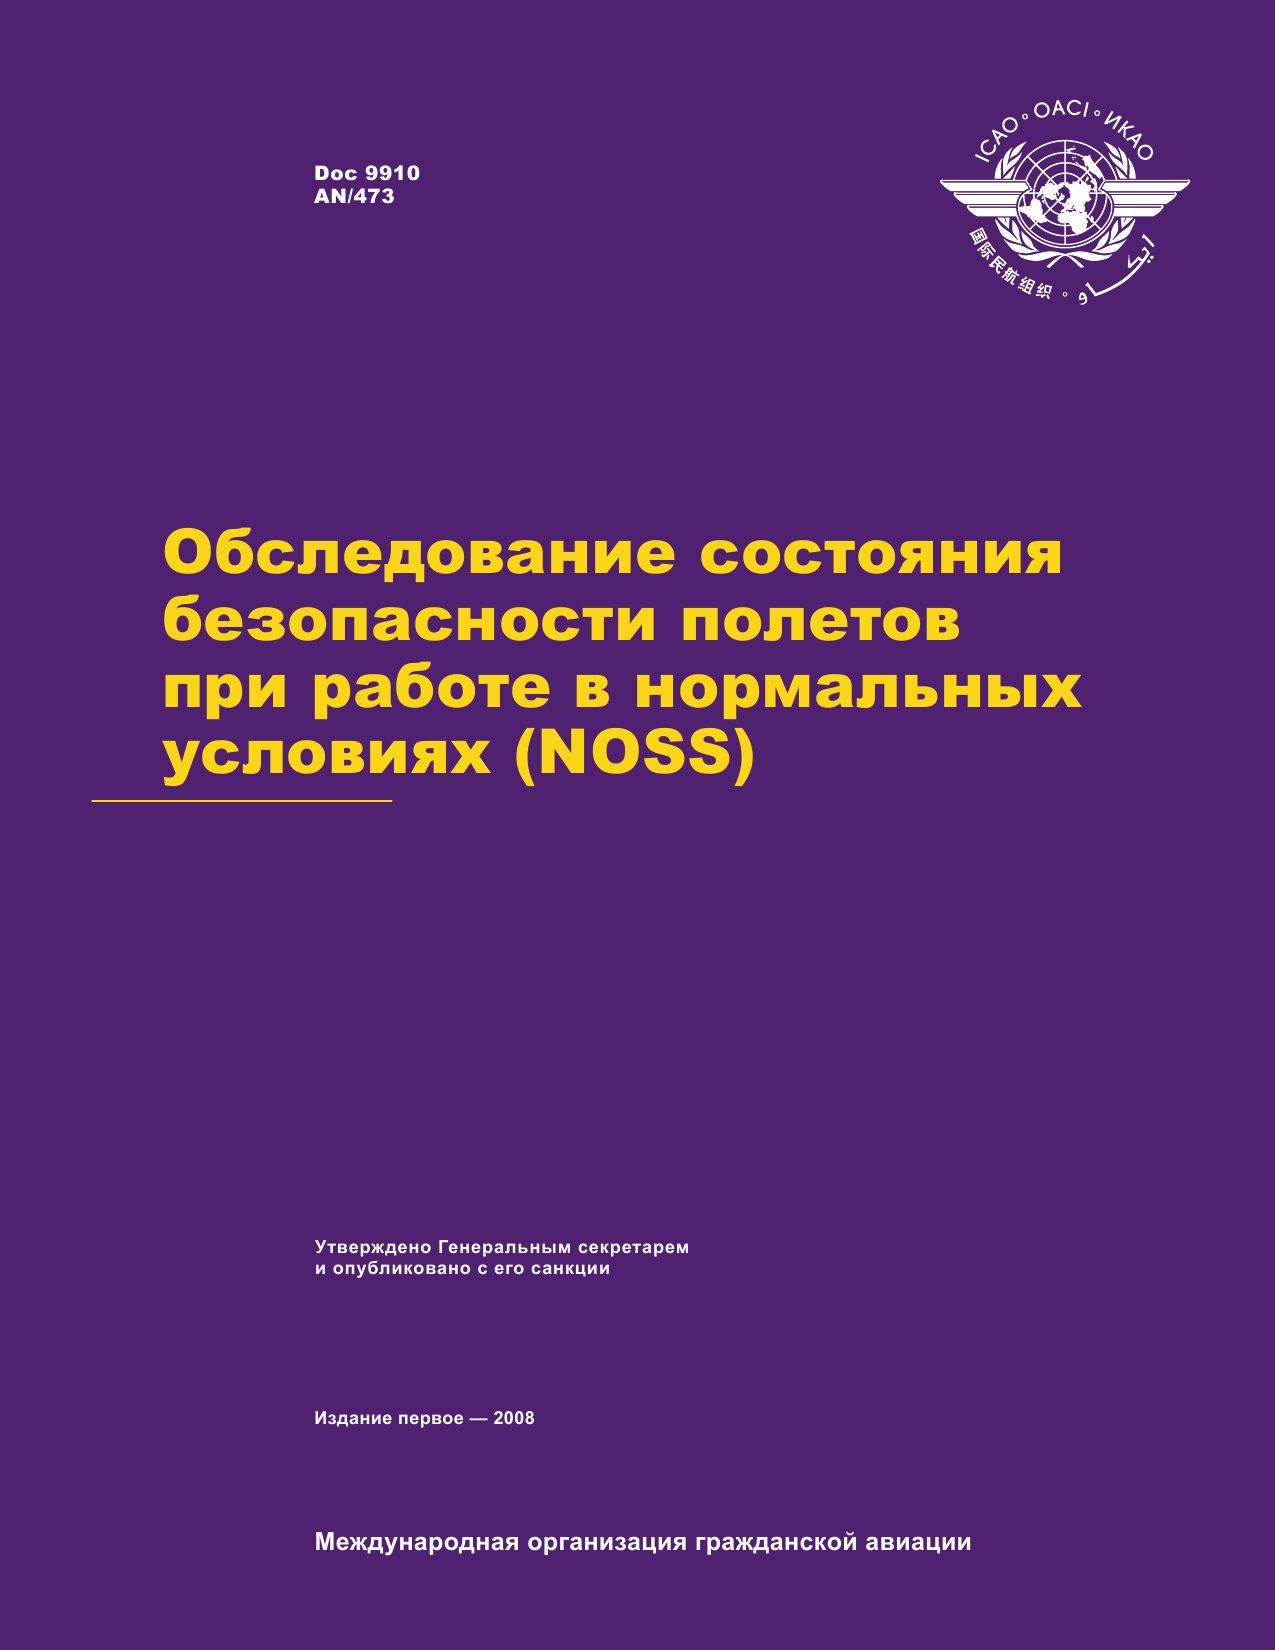 ICAO Doc 9910 Обследование состояния безопасности полетов при работе в нормальных условиях (NOSS)